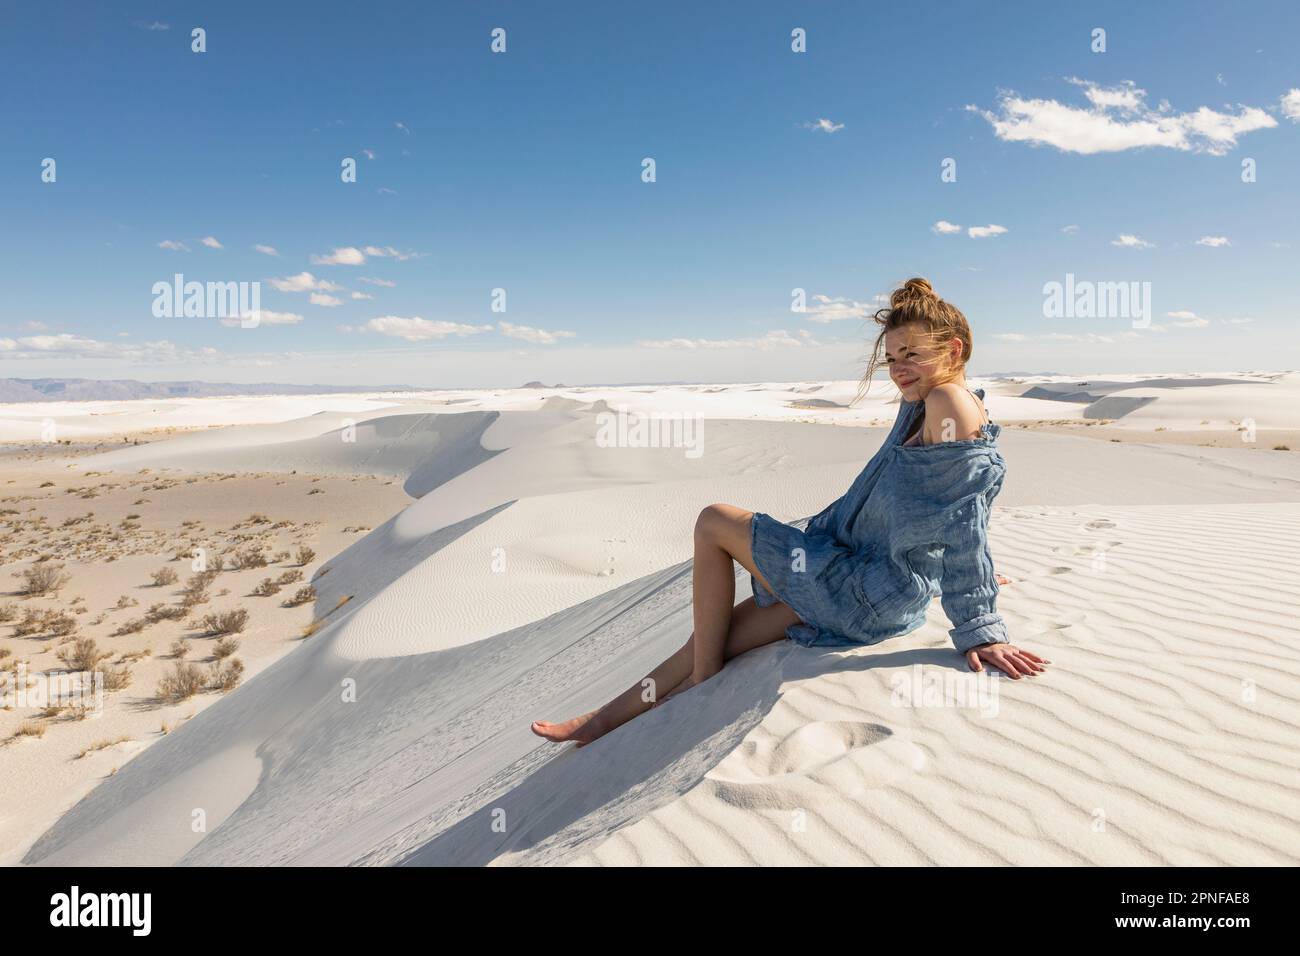 États-Unis, Nouveau-Mexique, parc national de White Sands, jeune fille assise sur le sable Banque D'Images